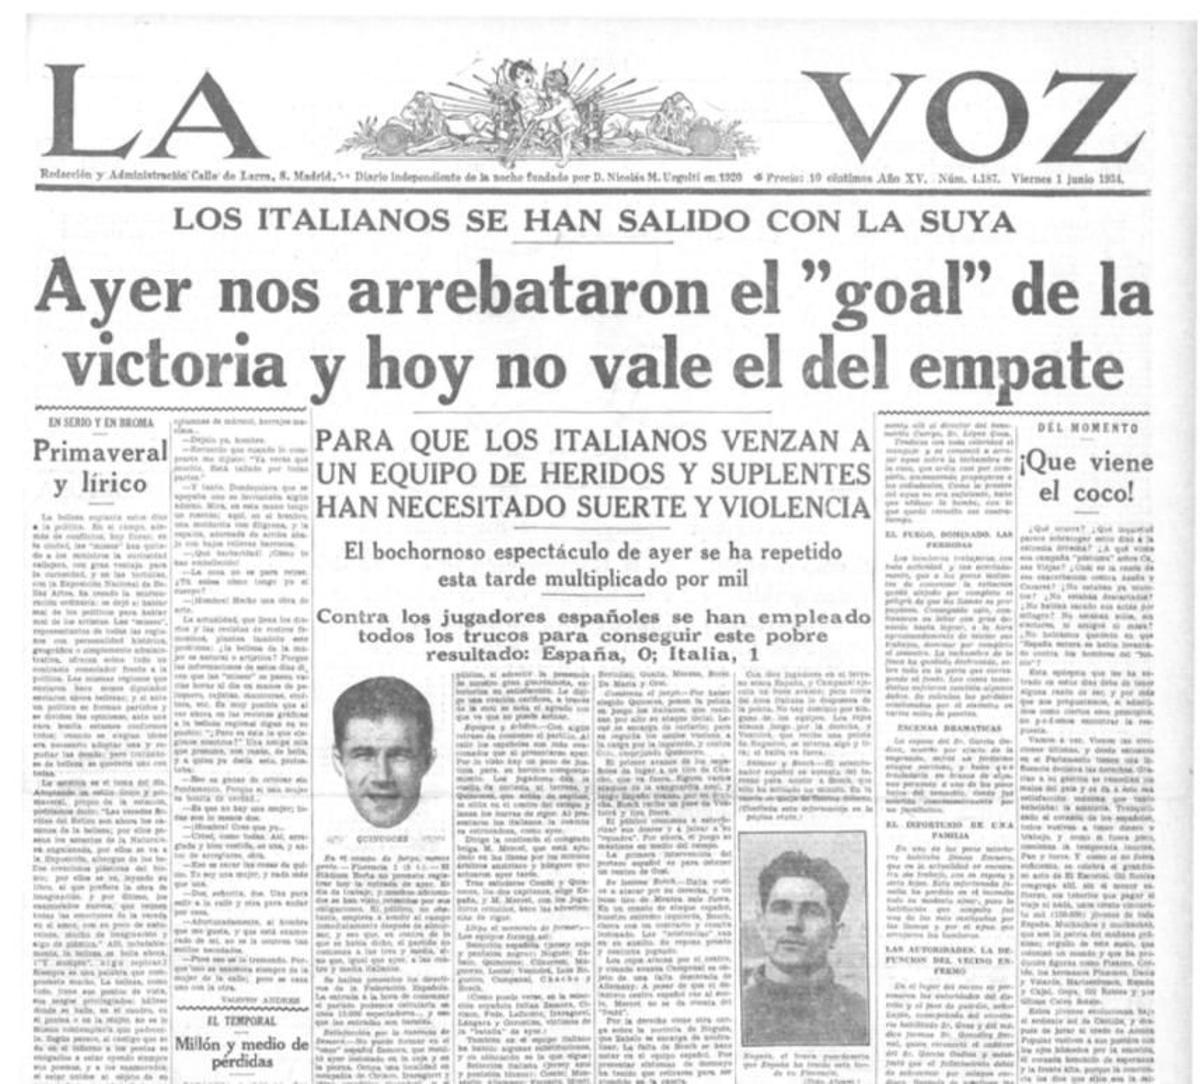 Imagen de 'La Voz' sobre el Mundial de 1934.